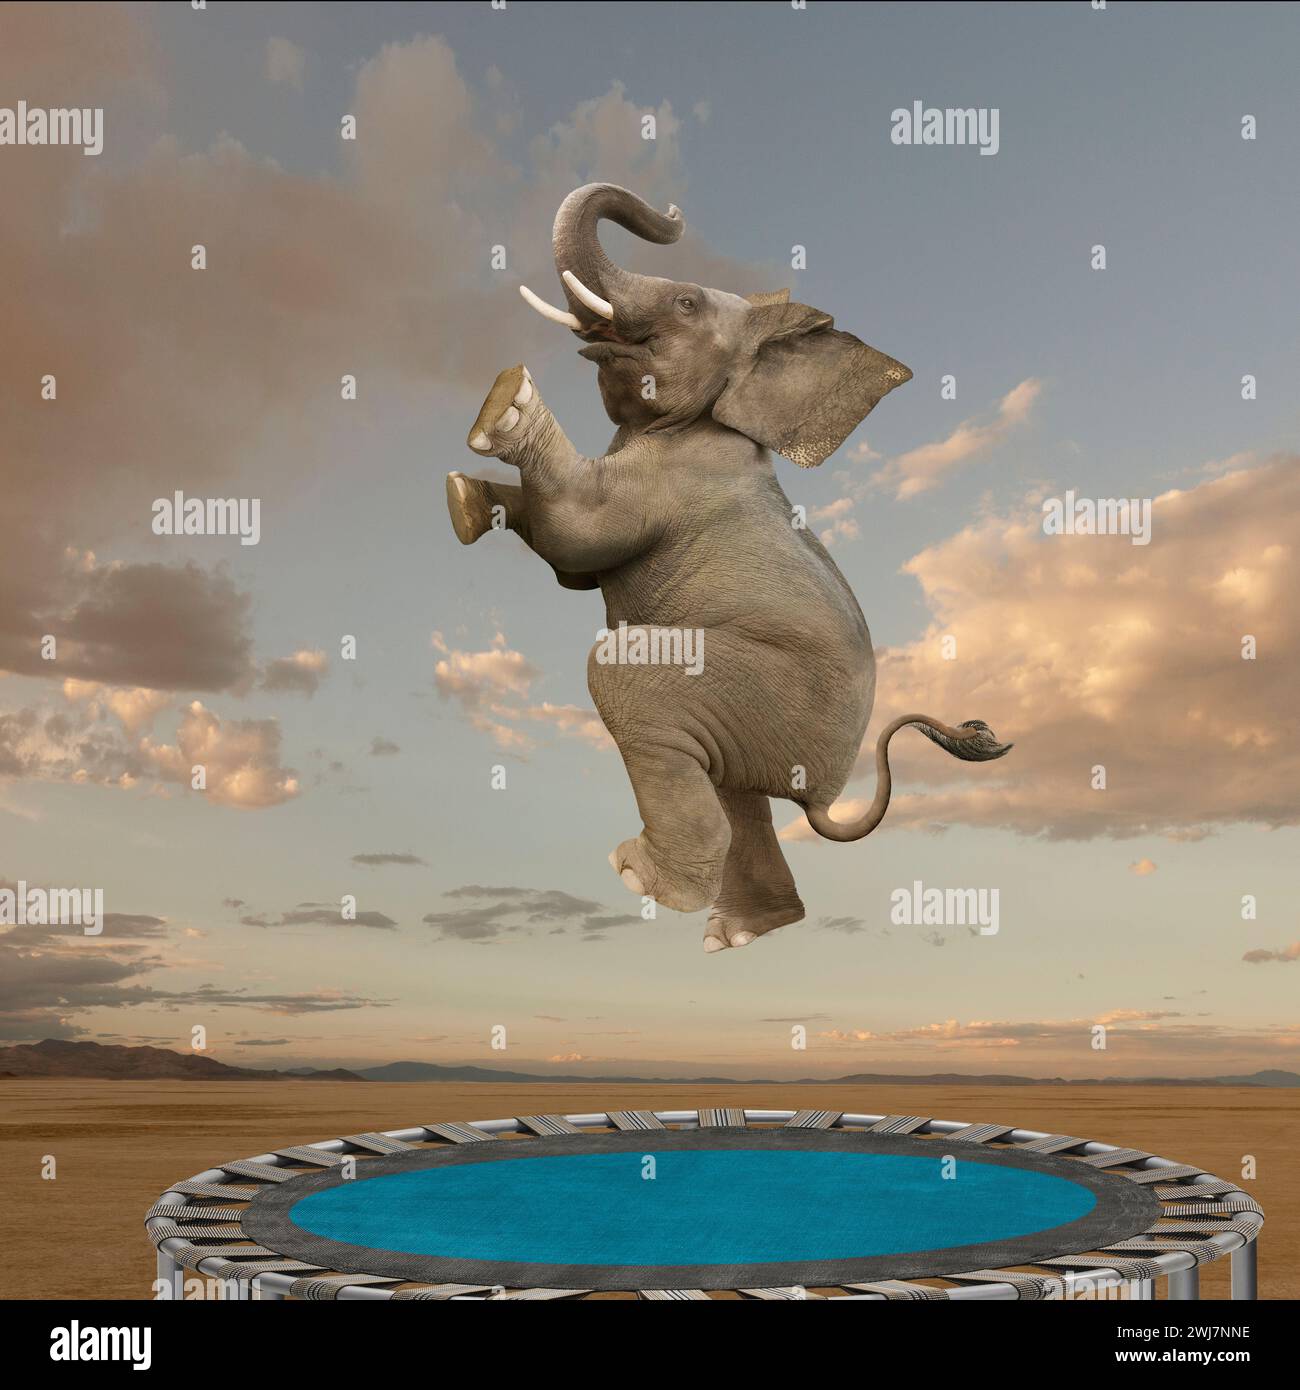 Un éléphant drôle saute avec enthousiasme sur un trampoline dans une image sur des compétences inattendues, l'agilité et l'équilibre. Banque D'Images